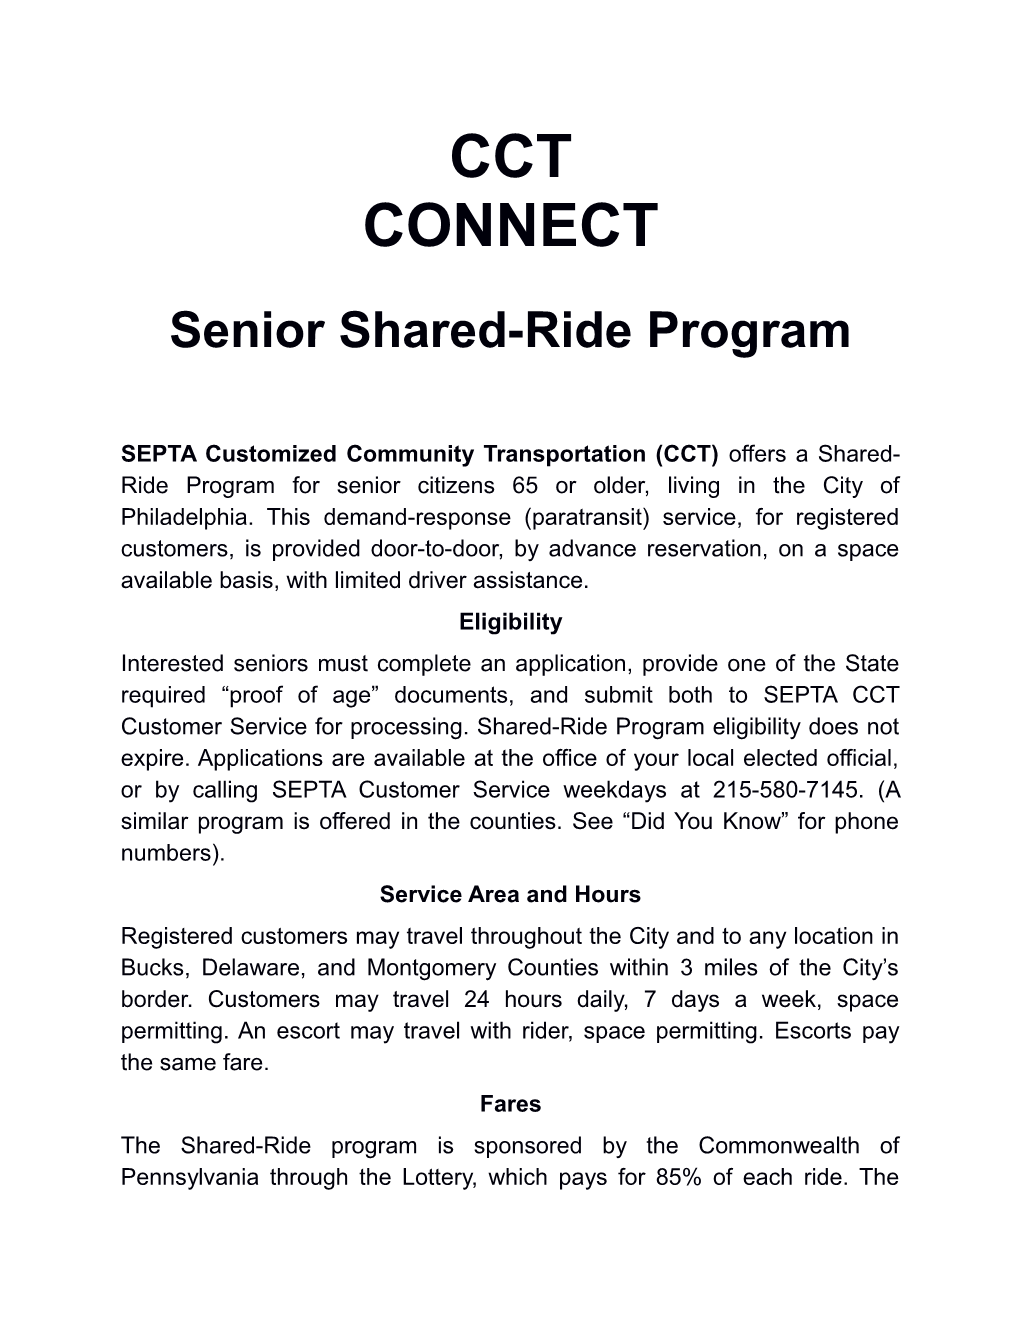 Seniorshared-Rideprogram